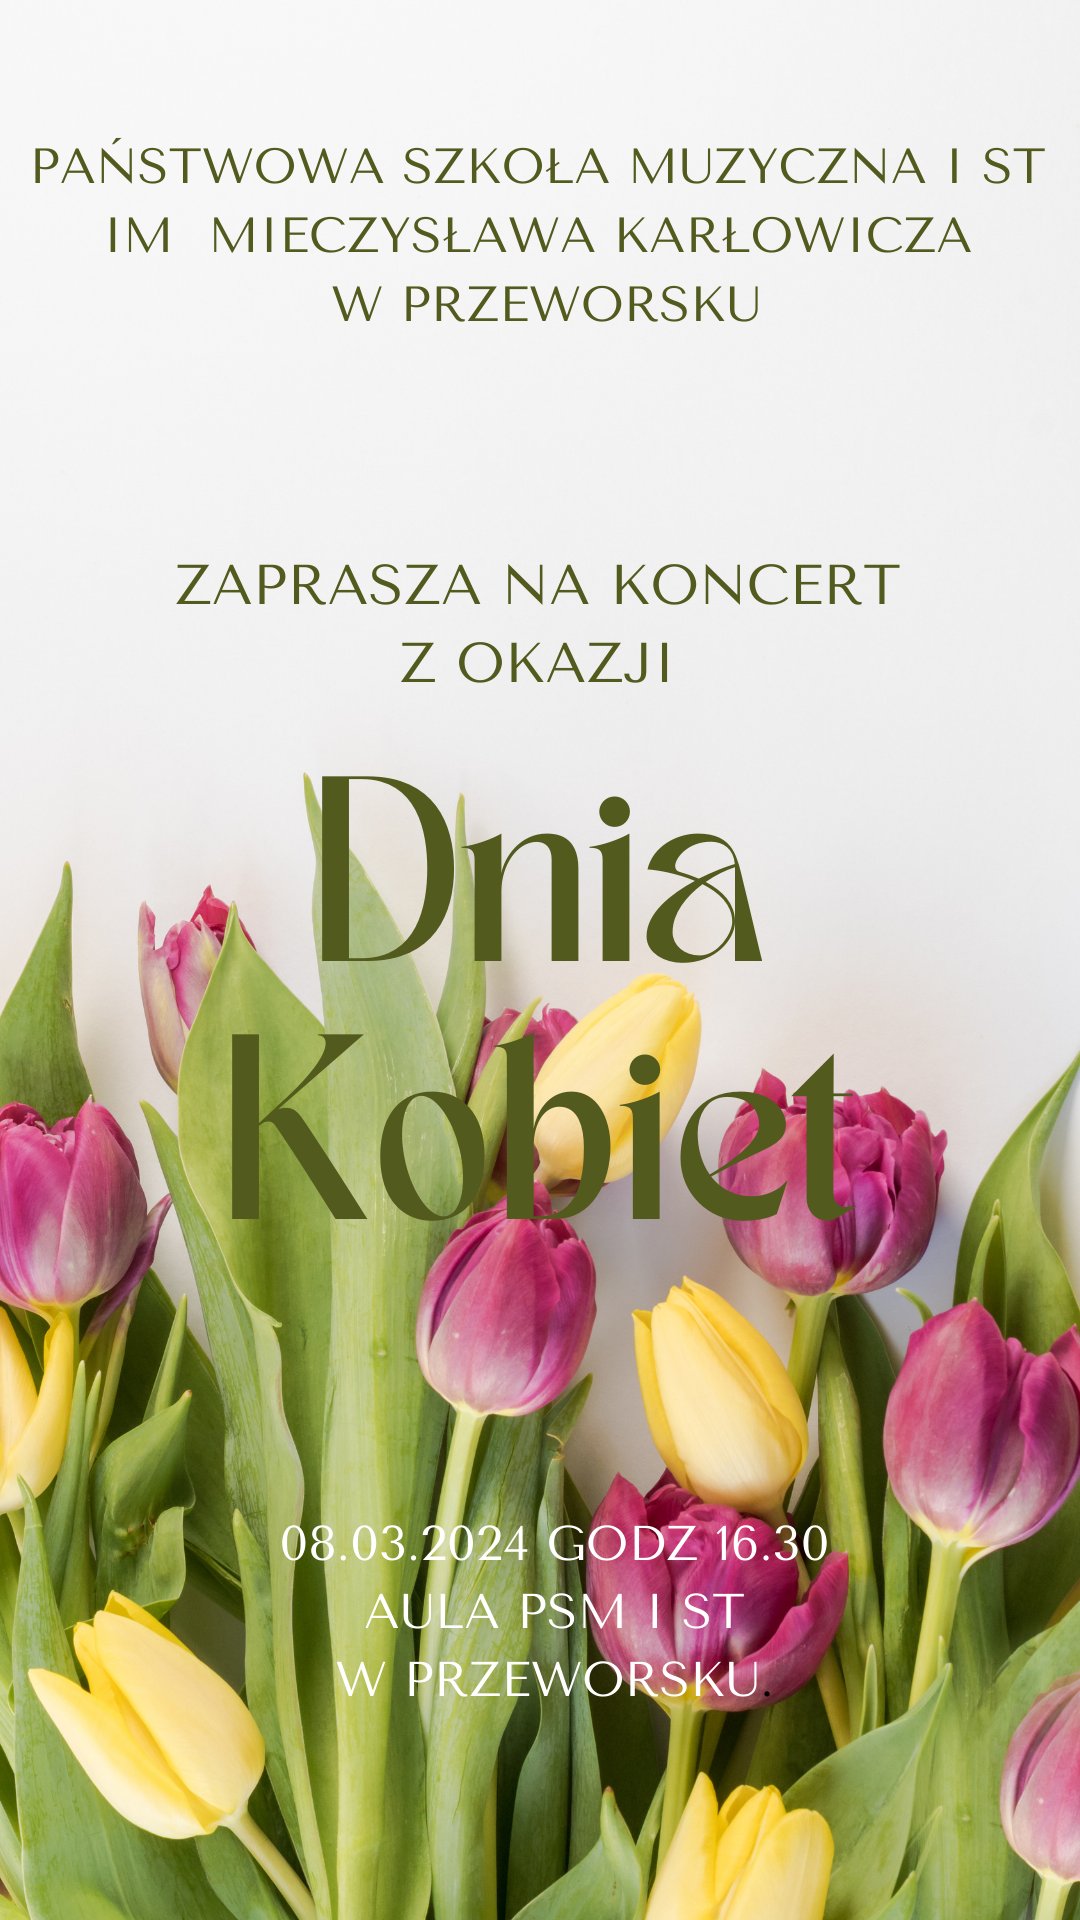 Z okazji Dnia Kobiet – koncert uczniów Państwowej Szkoły Muzycznej w Przeworsku